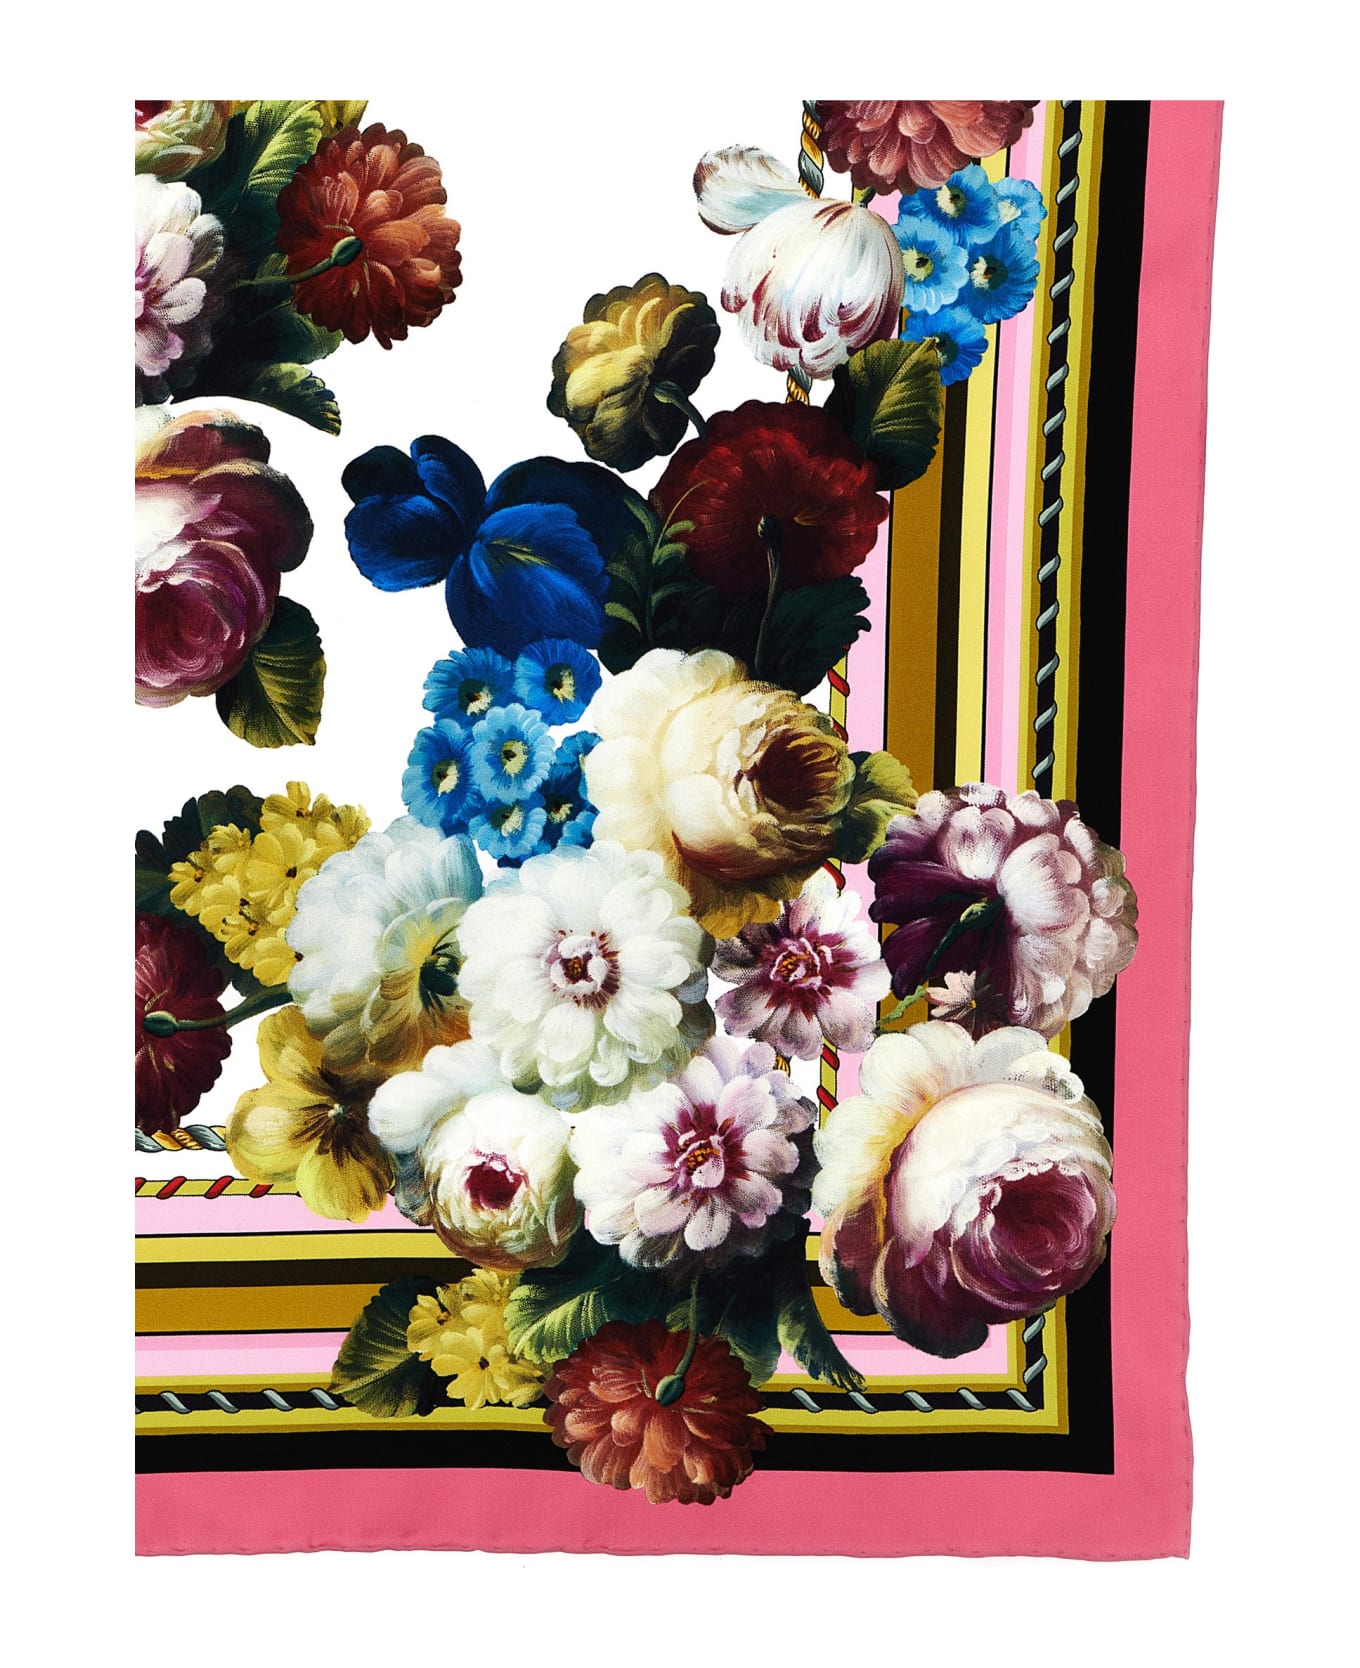 Dolce & Gabbana 'fiore Notturno' Foulard - Multicolor